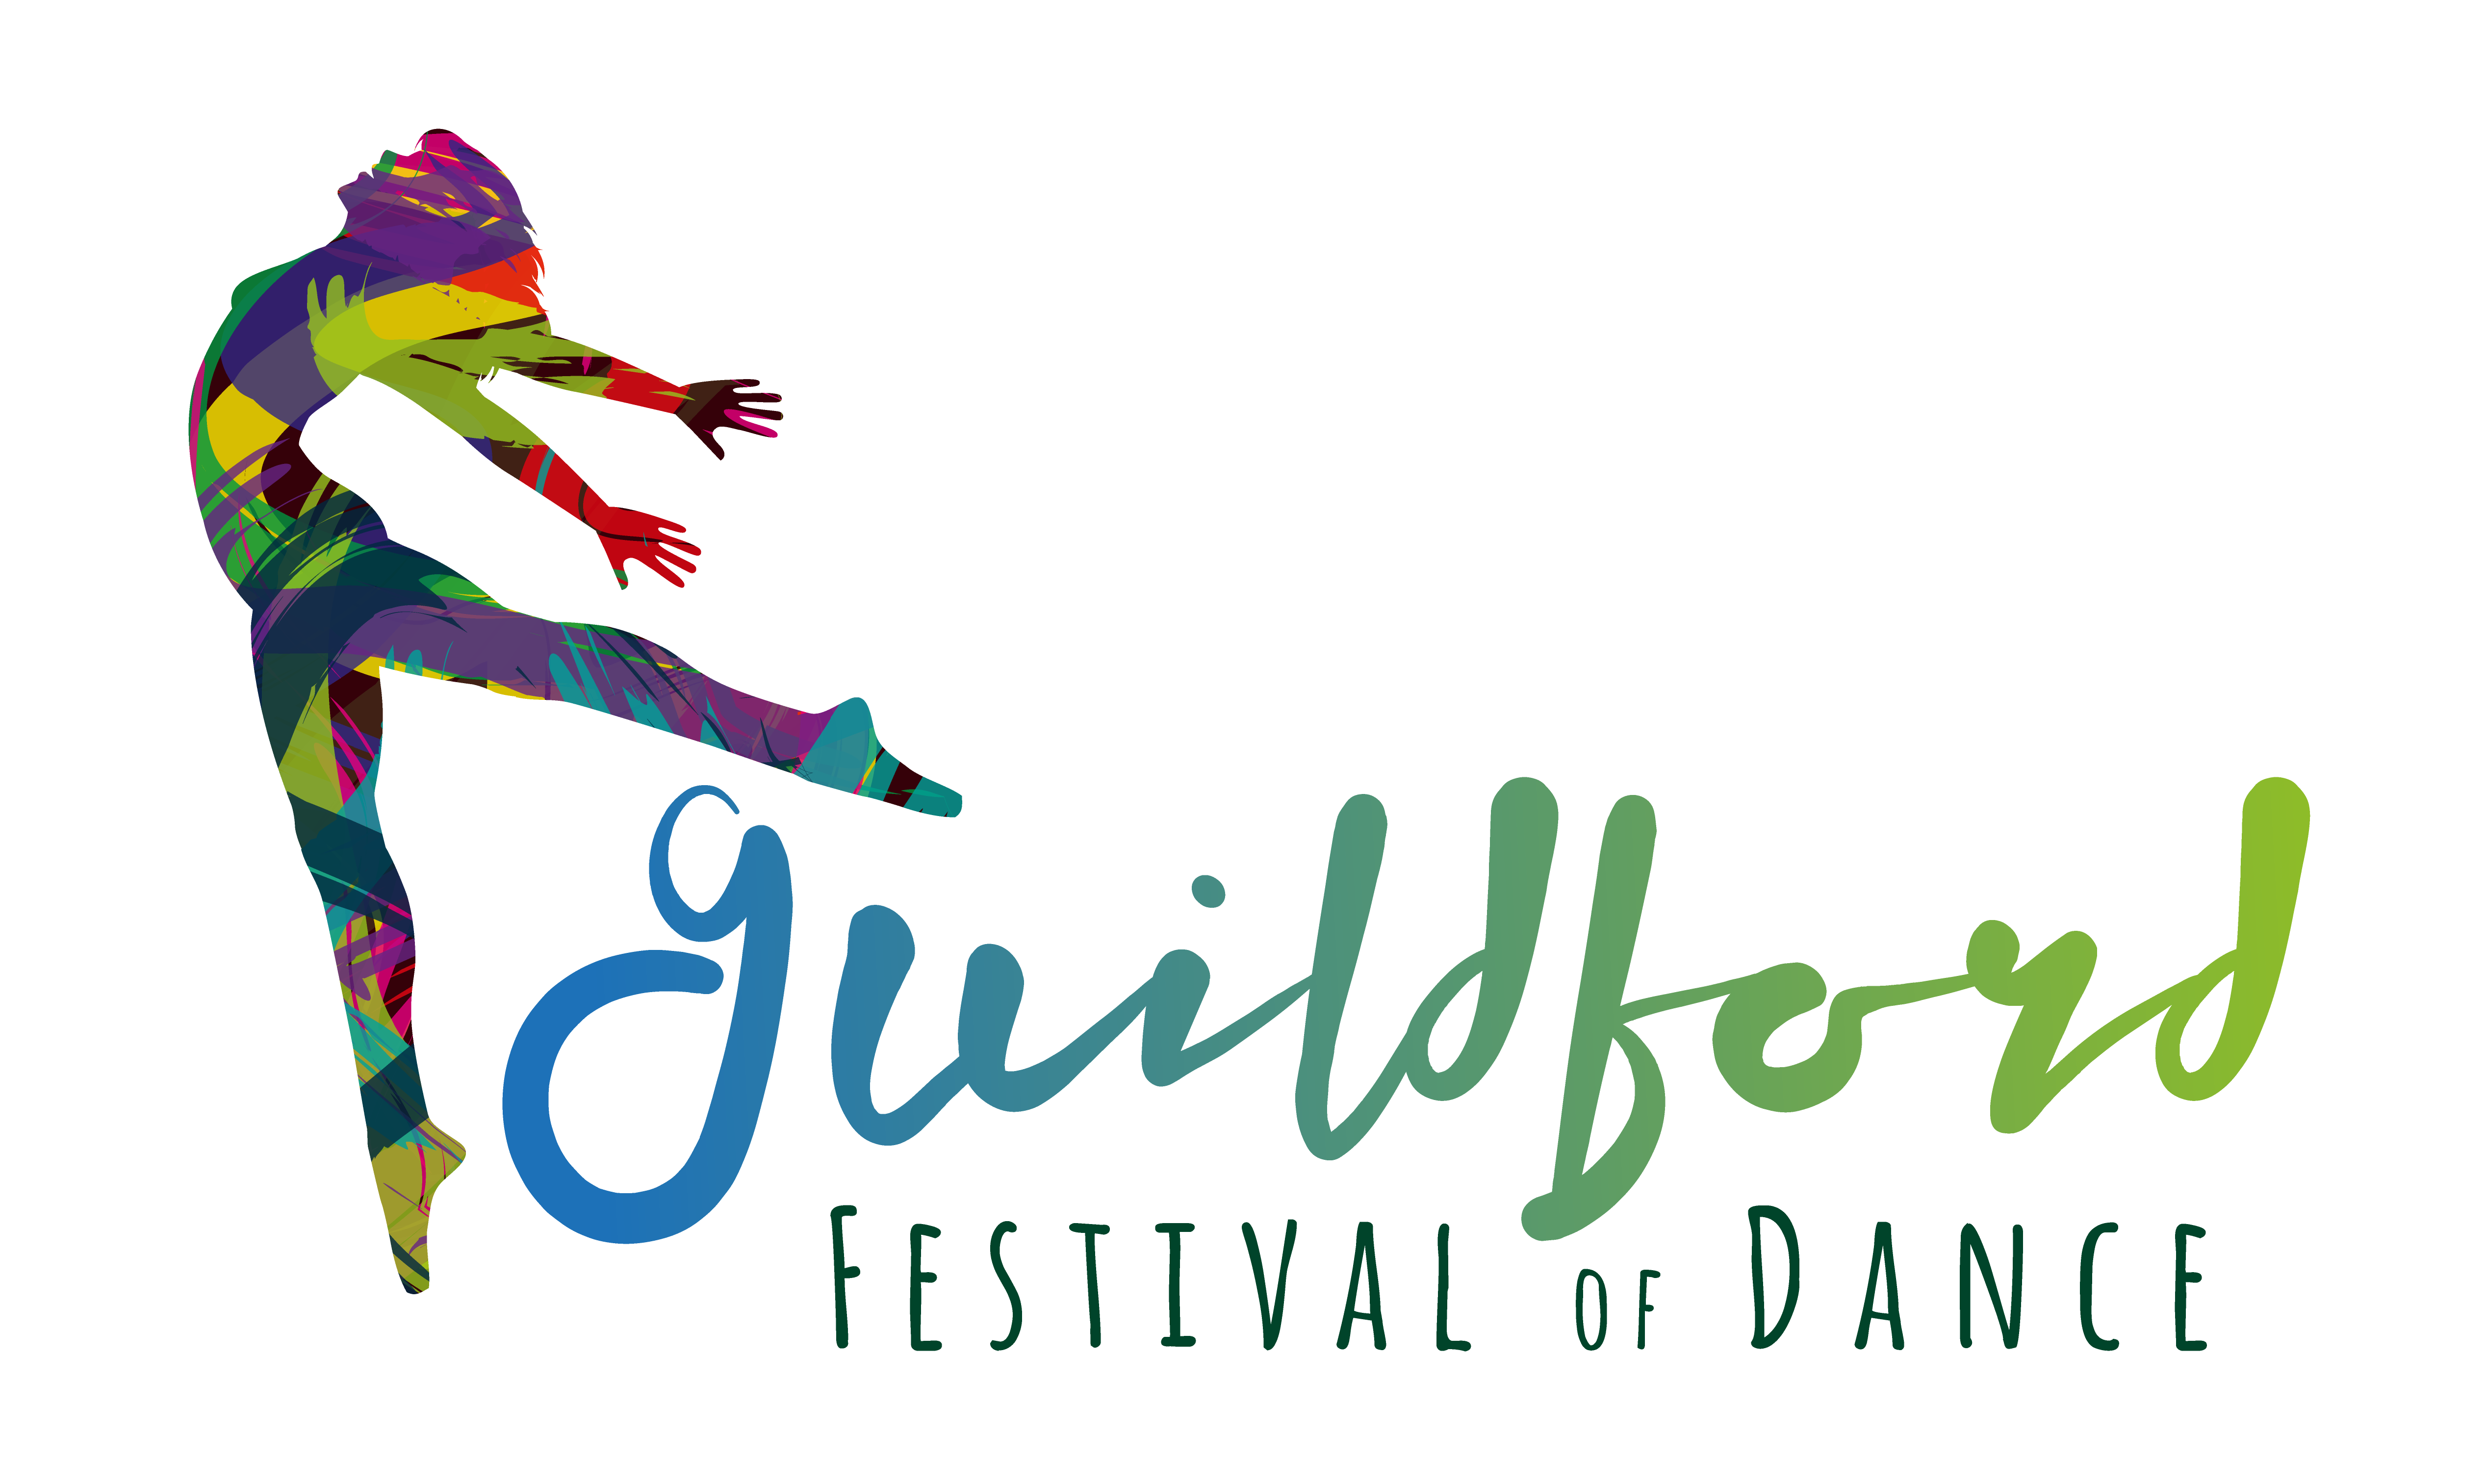 dancer clipart festival